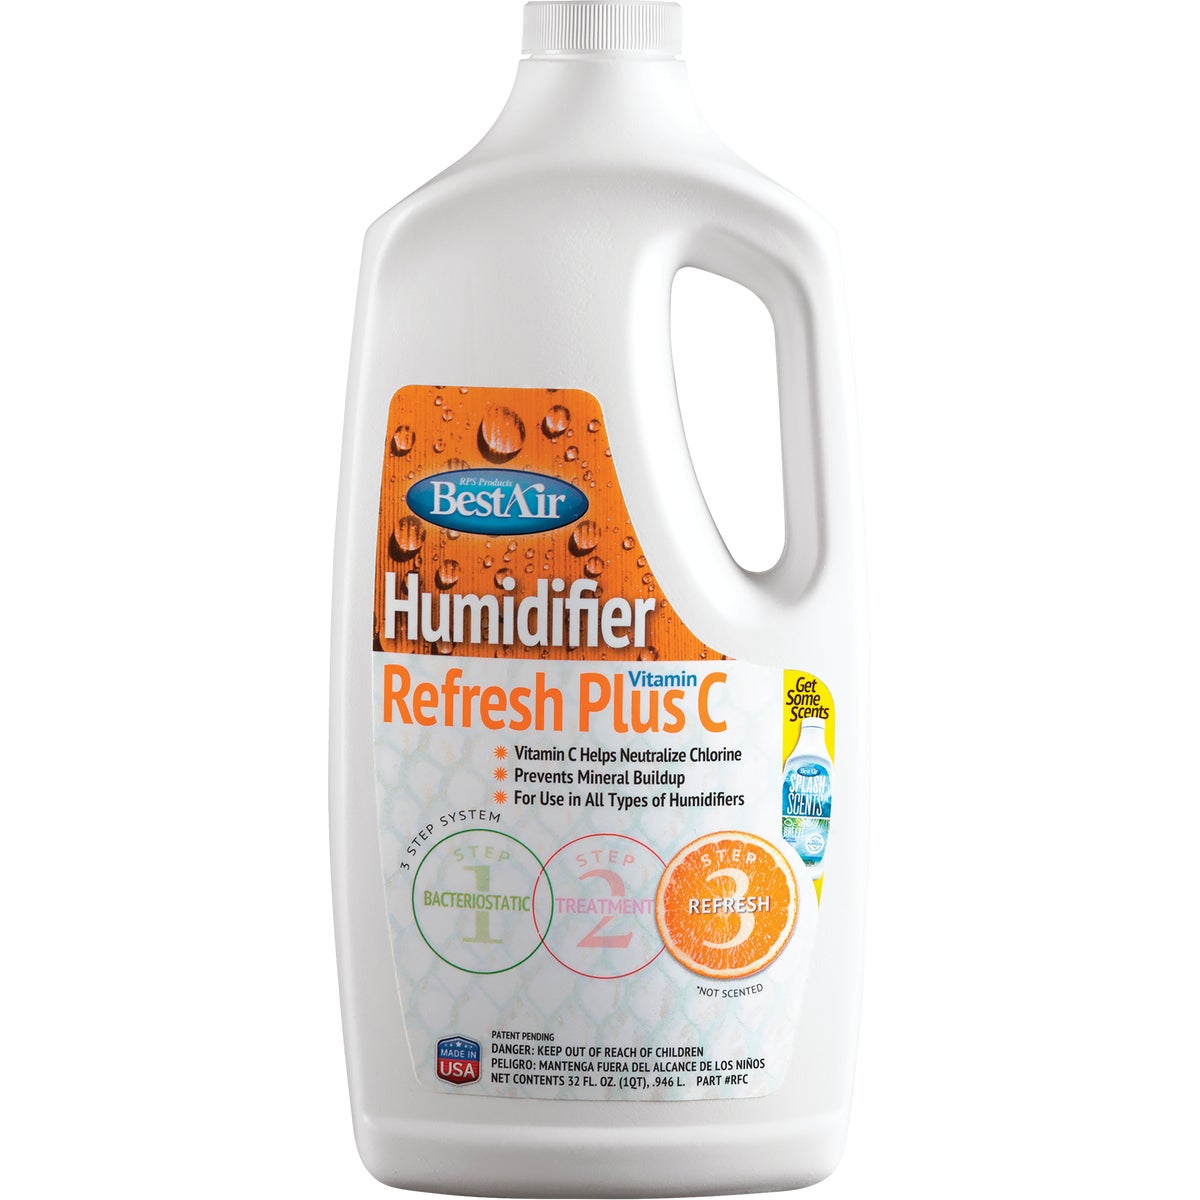 BestAir Refresh Plus Vitamin C 32 Oz. Liquid Humidifier Treatment